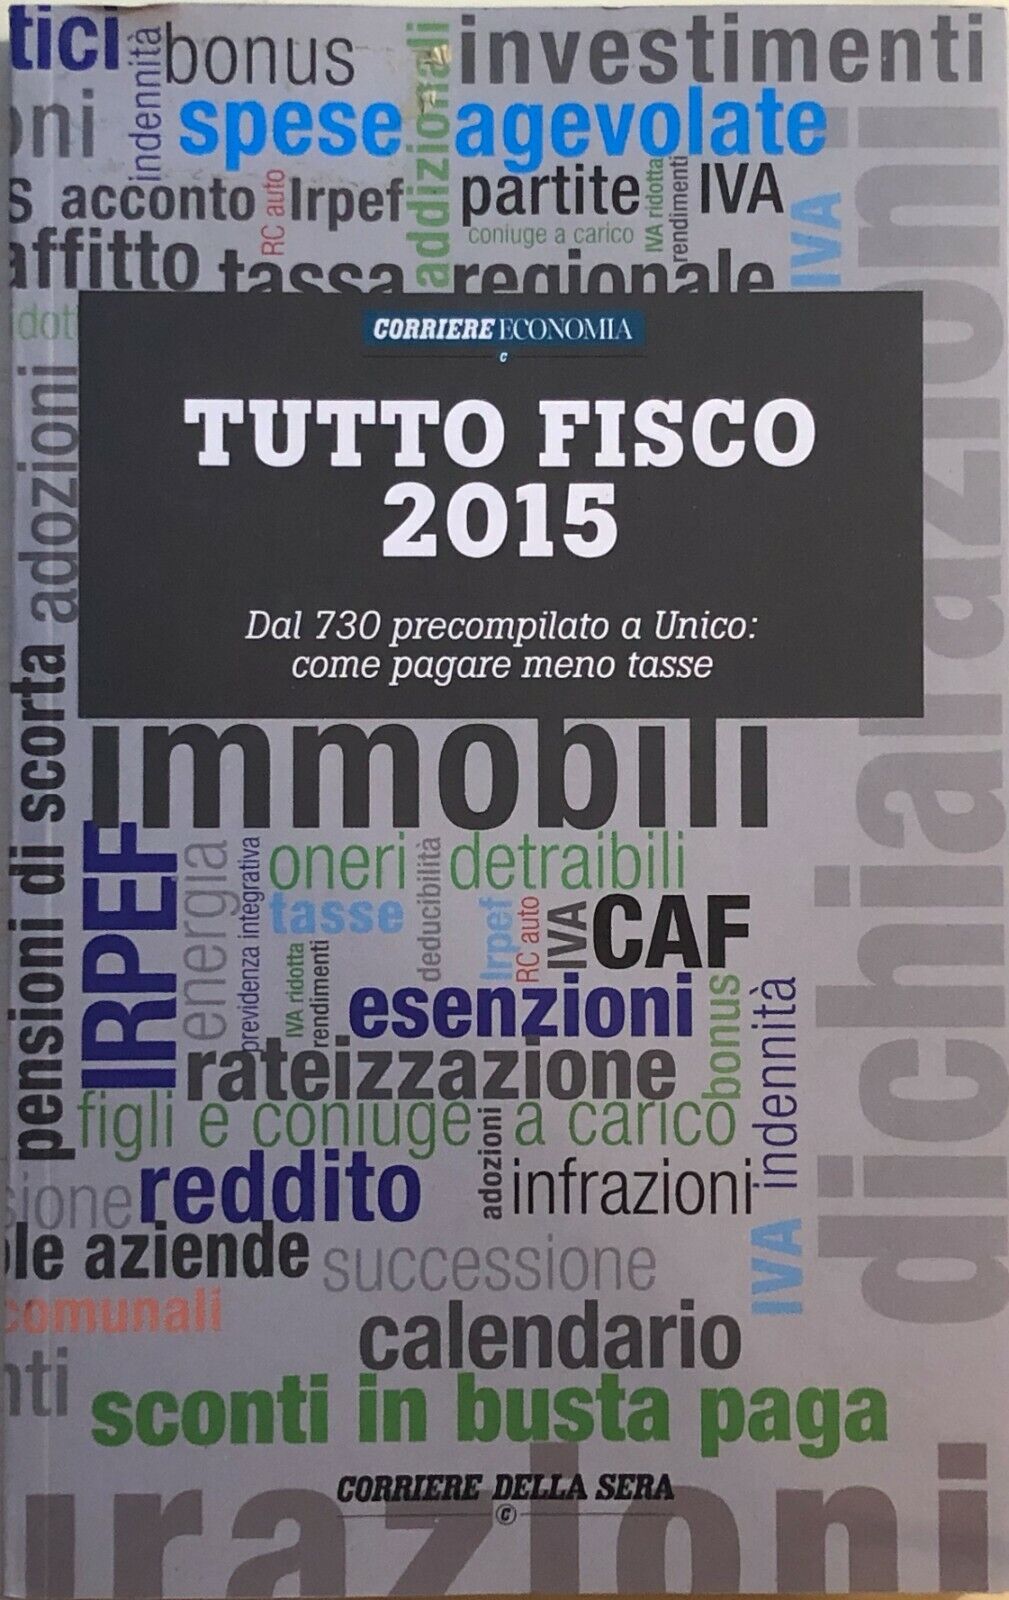 Tutto fisco 2015 di Corriere economia, 2015, Corriere della Sera